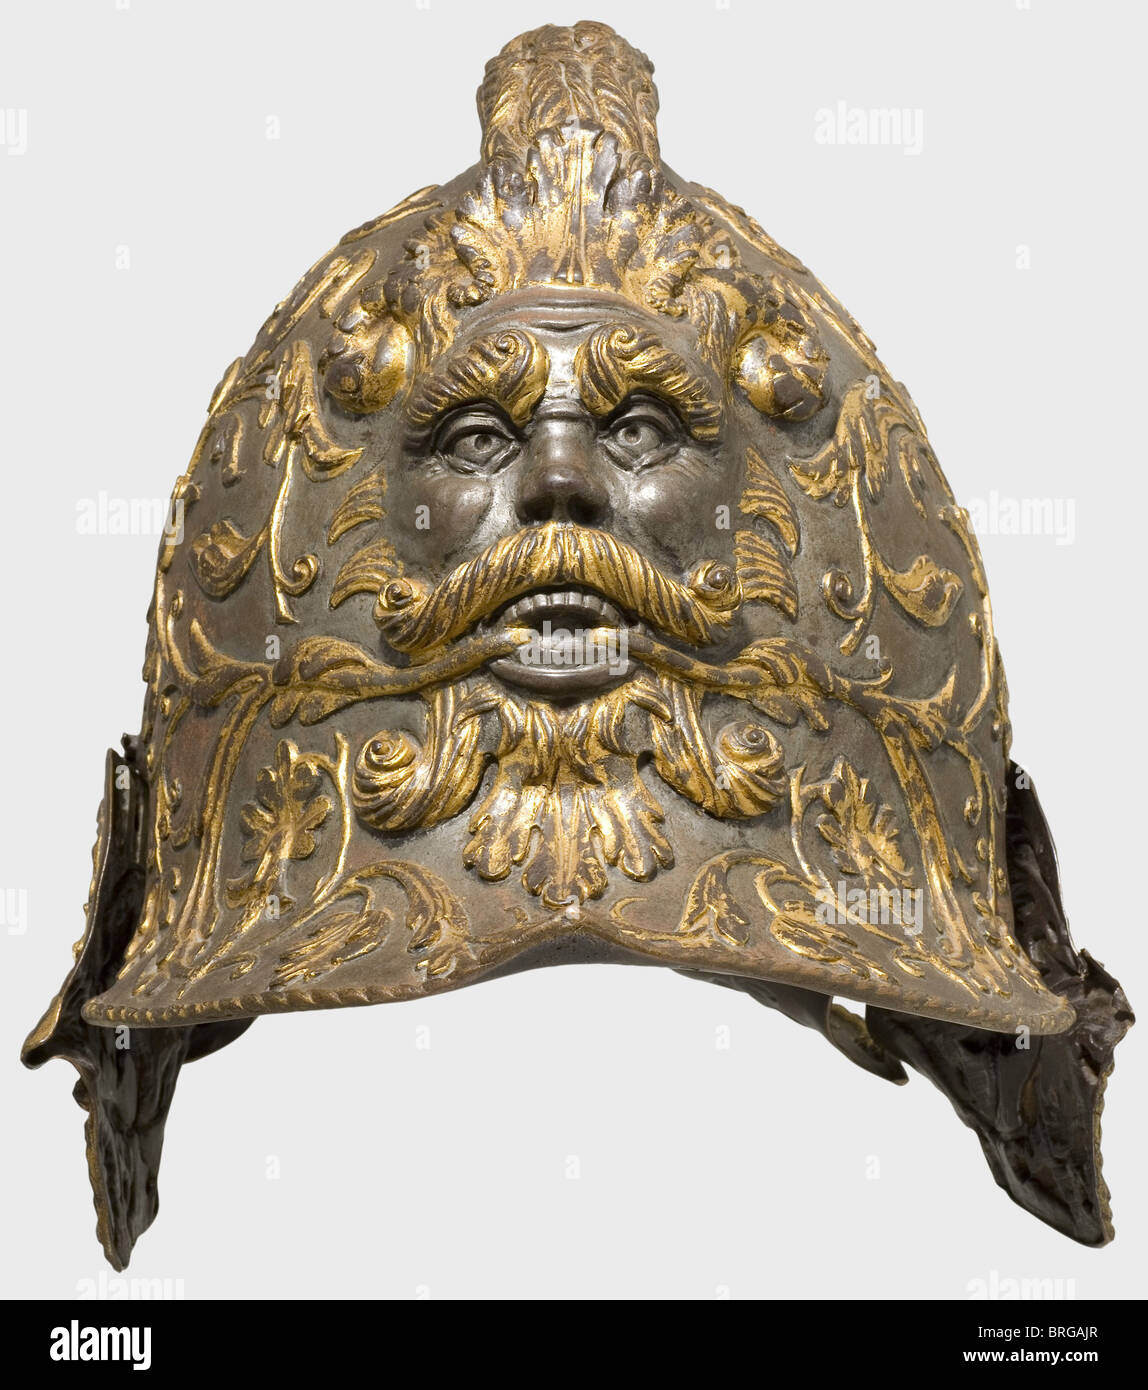 Ein Burgonet von Heinrich II. Von Frankreich(1519 - 1559), Ende des 19. Jahrhunderts Kupfergalvanisierung mit fein gearbeiteter Oberfläche und Feuervergoldung. Groteske Maske auf der Vorderseite in Form eines gehörnten Mannes Kopf, mit Akanthus Reben und Blumen aus seinem Mund wachsen, elegant durch den dunklen Hintergrund betont. Der Kamm hat die Form eines Haarflechtes. Höhe 26.5 cm. Das Original befindet sich im Musée du Louvre, Paris (MR. R.3) und wurde von Giovan Paolo Megroli in Mailand, um 1545, angefertigt. Die passende Rüstung ist in Privathand (Hever Castle Auction, London, 5. Mai, Additional-Rights-Clearences-not available Stockfoto